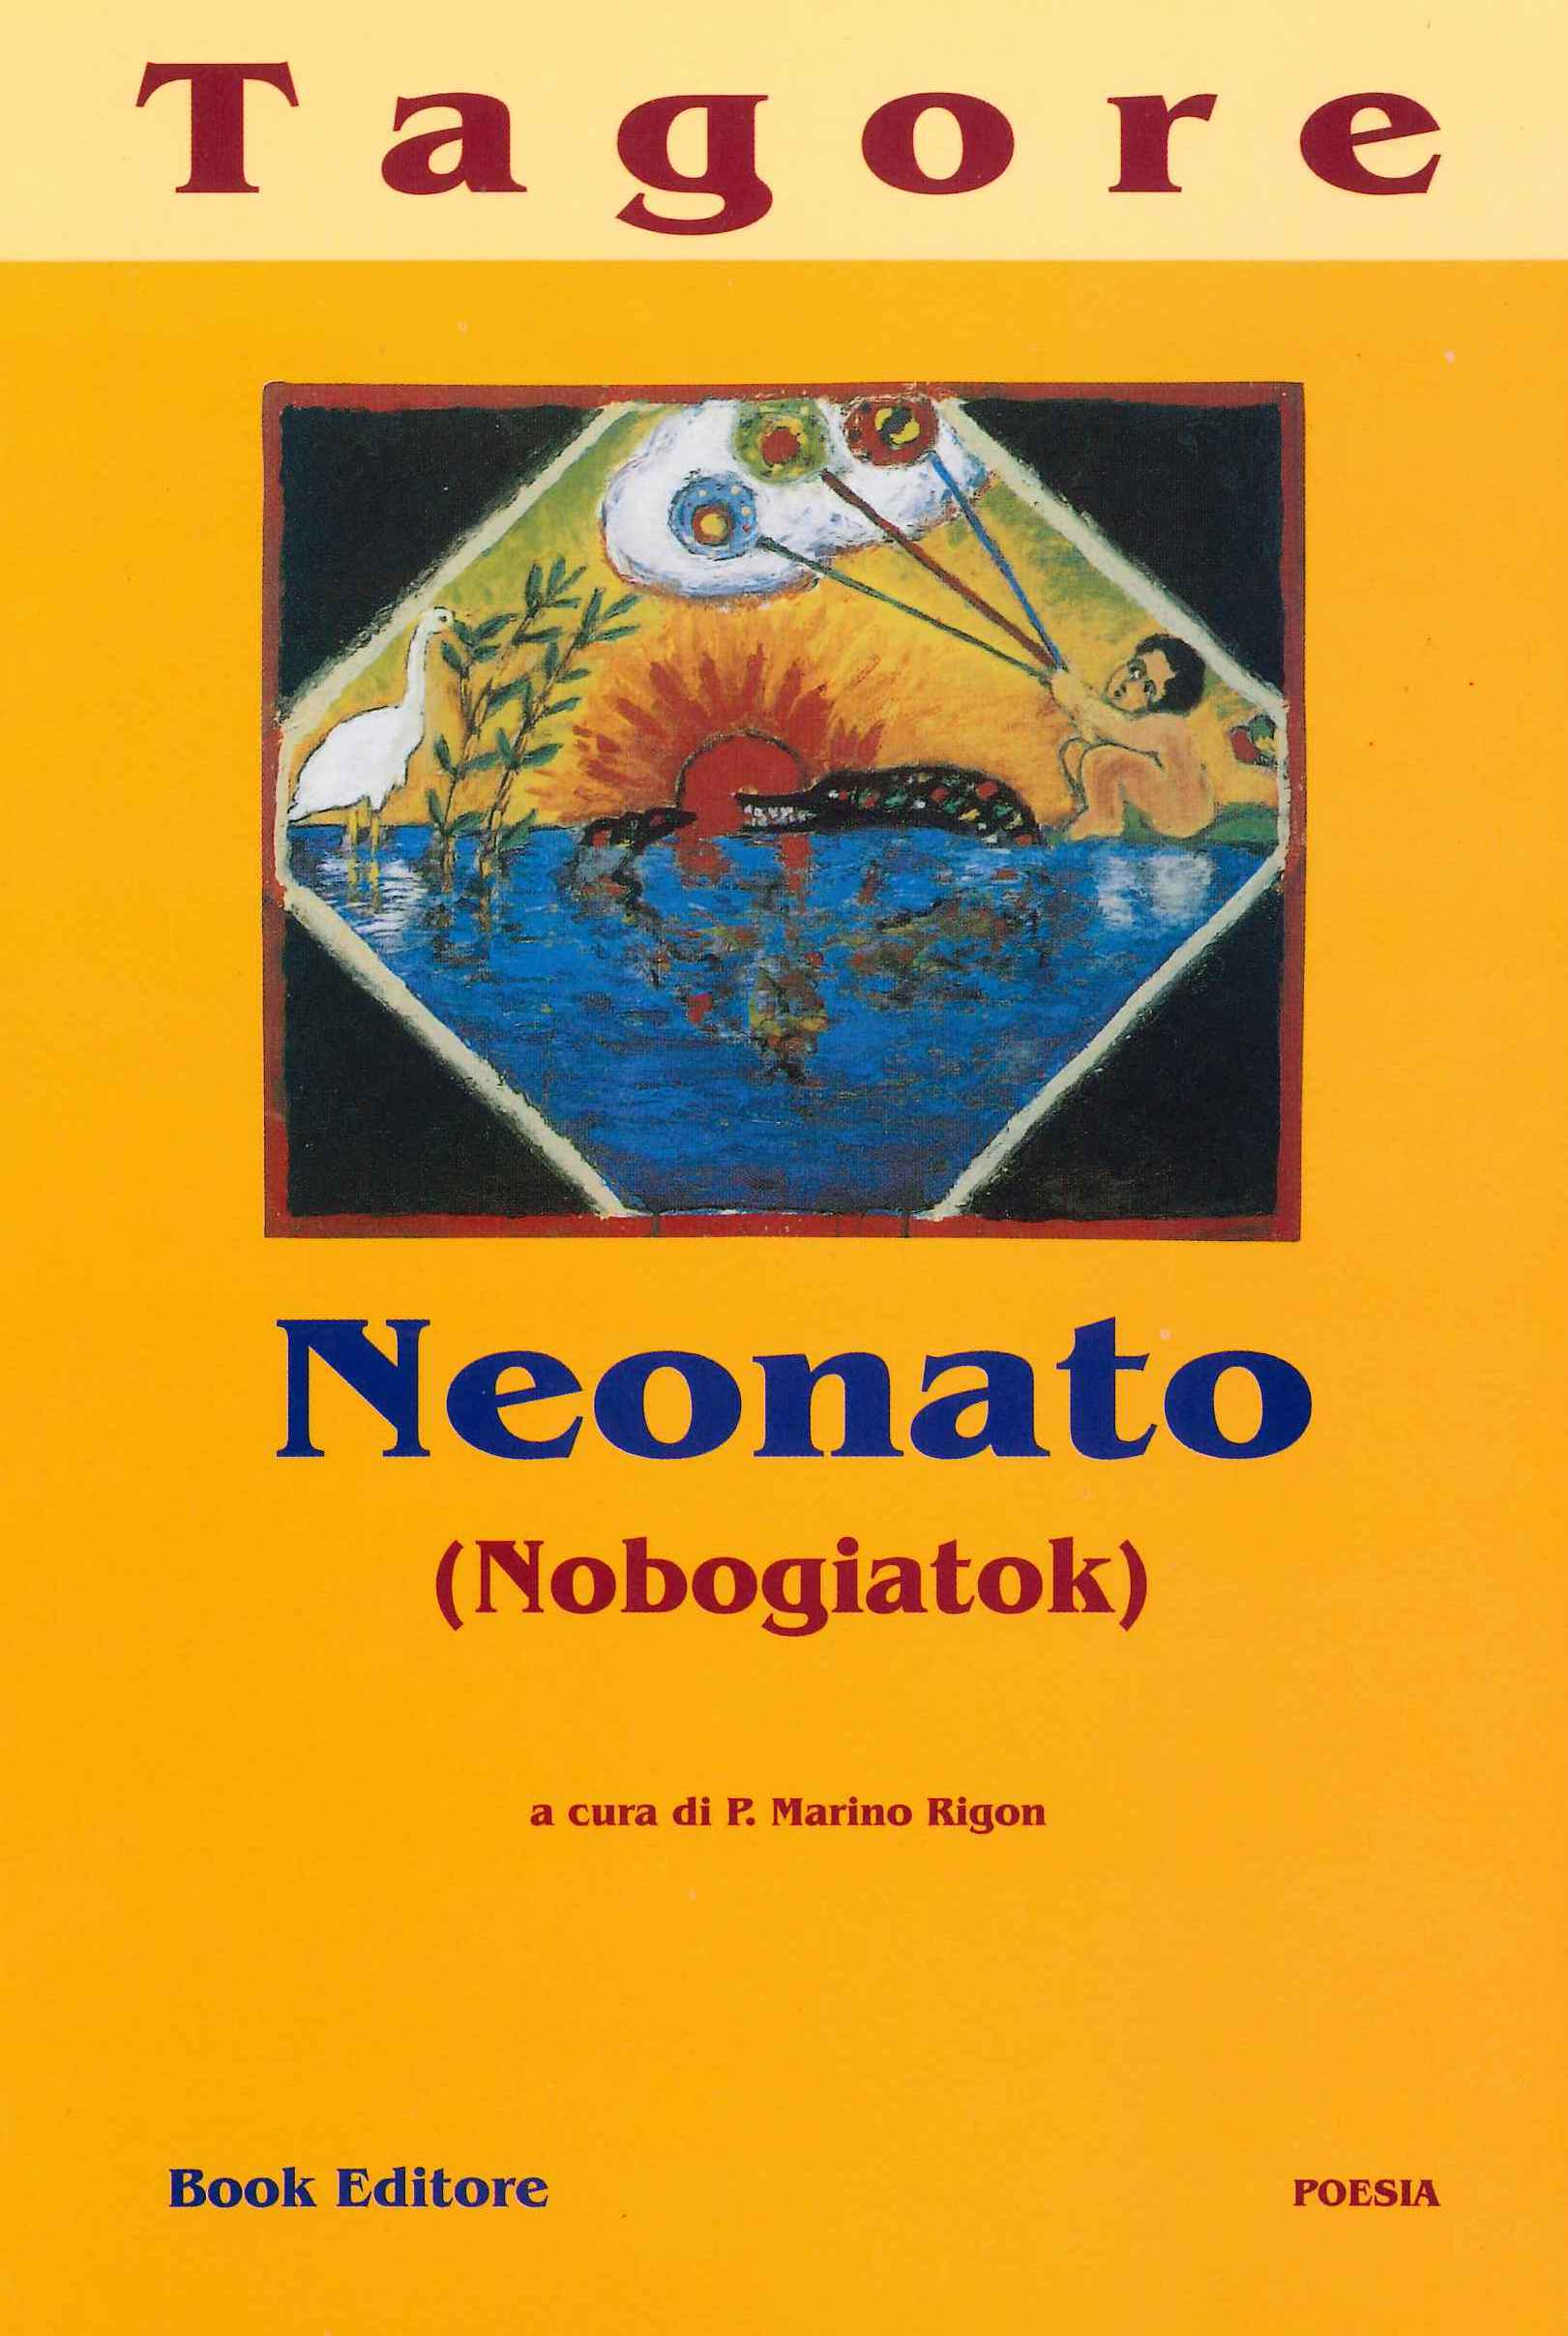 Tagore.Neonato.Collana Book Classici 2001